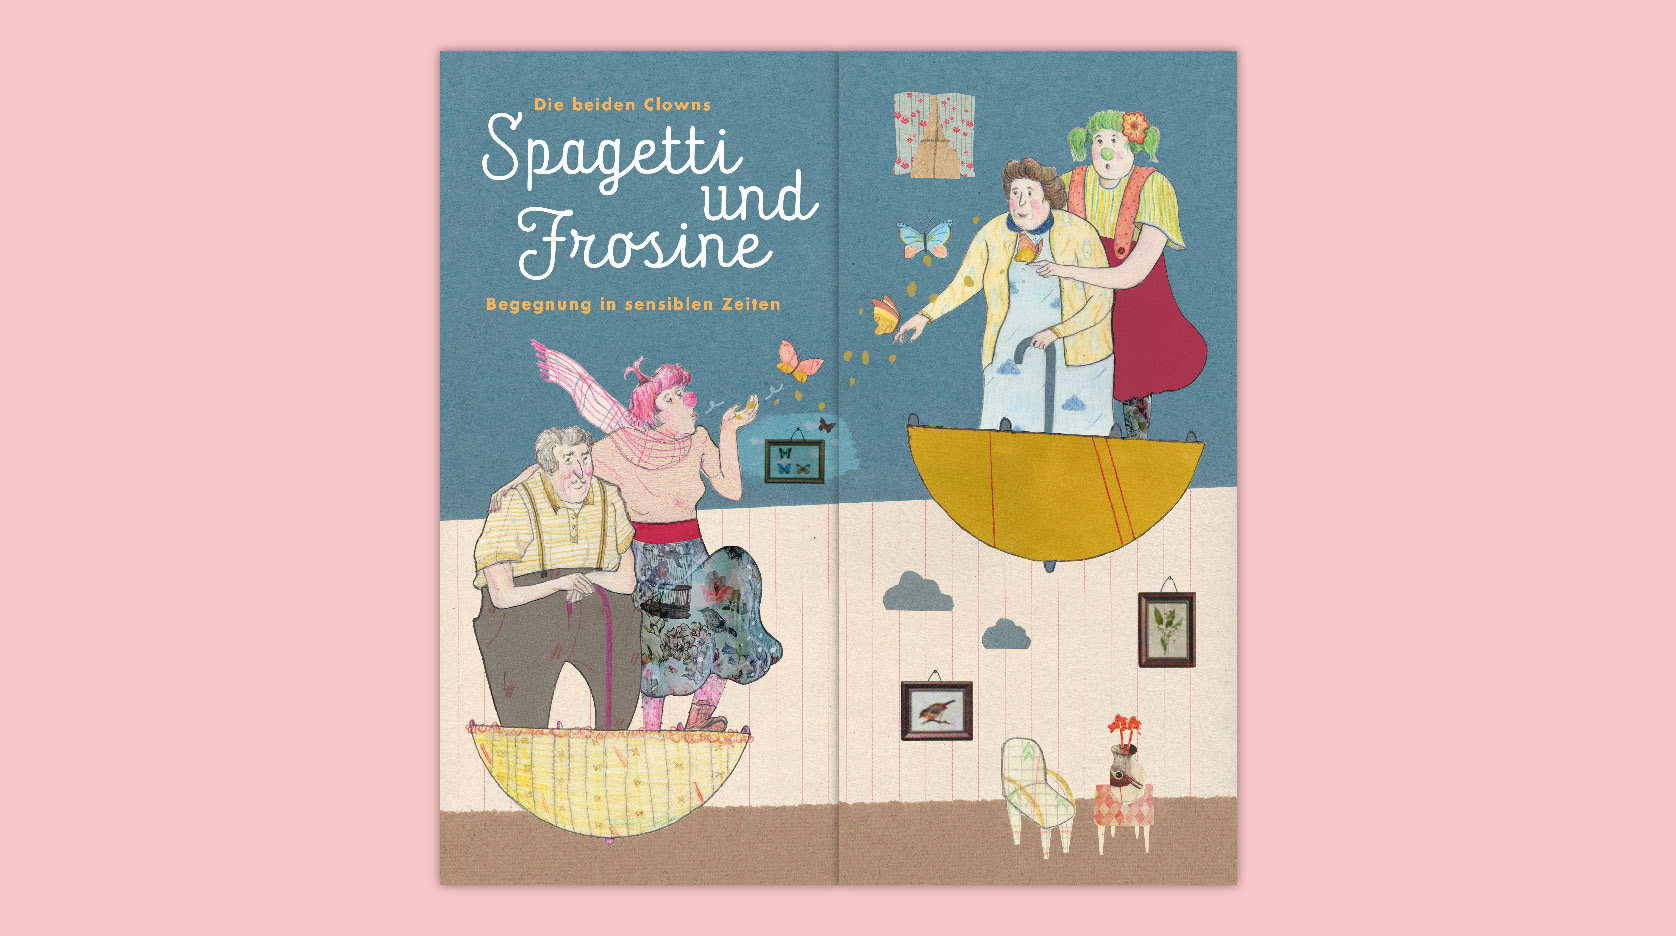 Spagetti und Frosine: Titel des Faltblattes,
 Collage aus Buntpapieren und Zeichnung